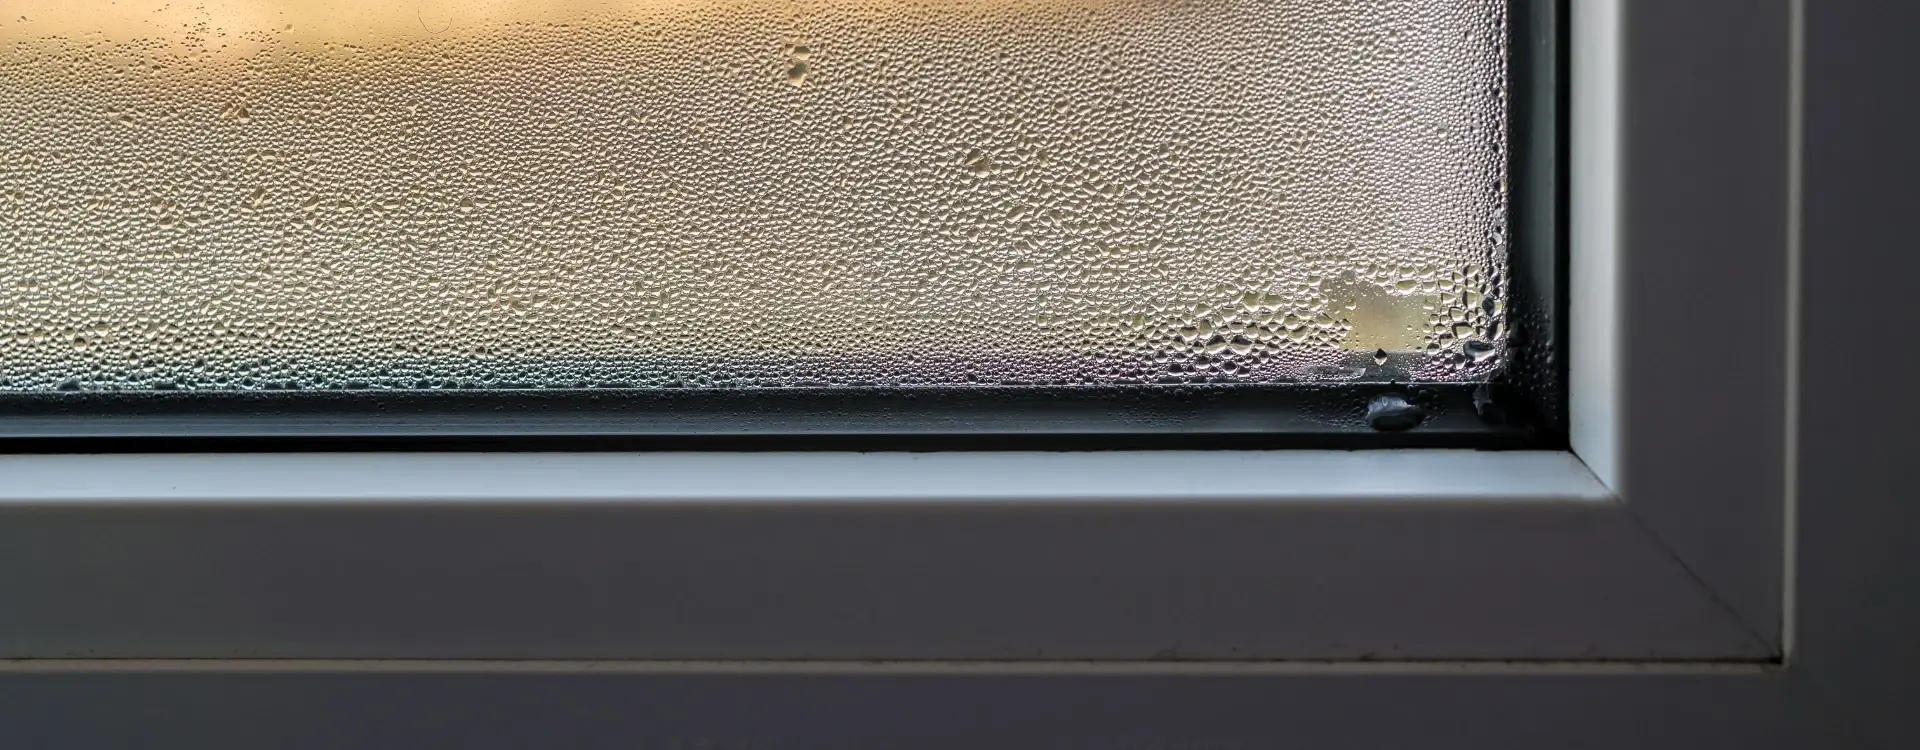 widok kropel wody na oknie